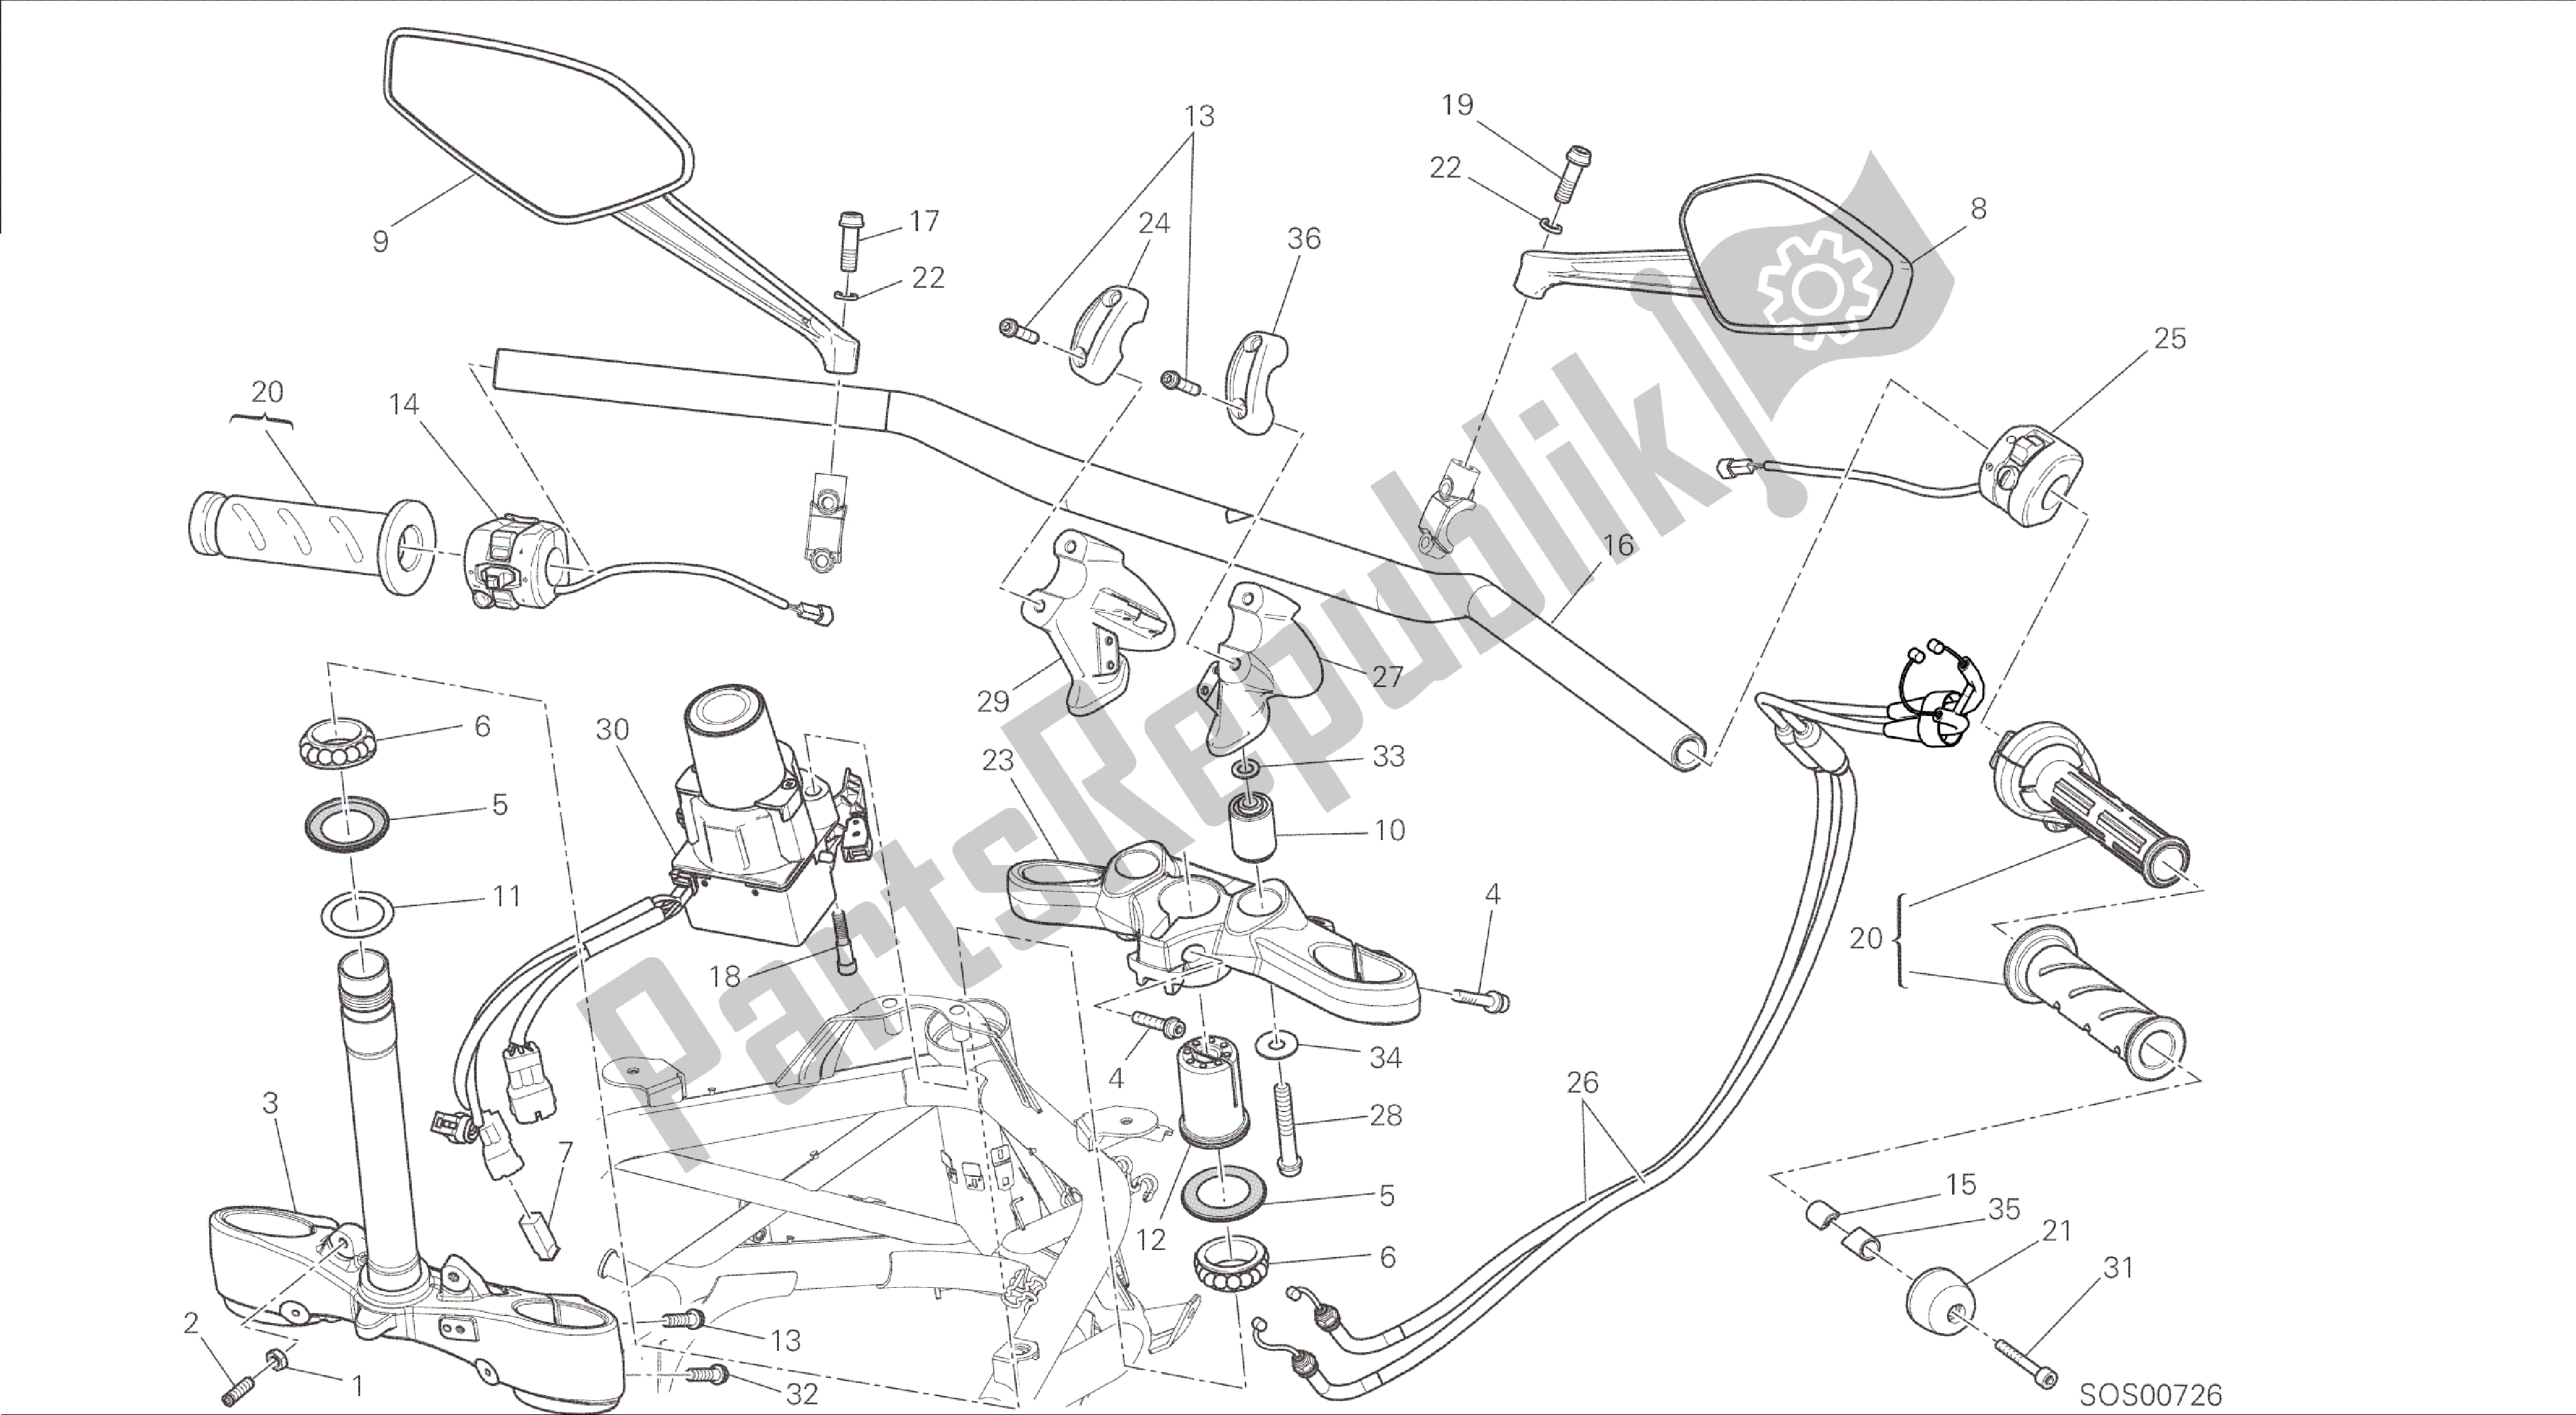 Toutes les pièces pour le Dessin 021 - Cadre De Groupe Guidon [mod: Dvl] du Ducati Diavel 1200 2015